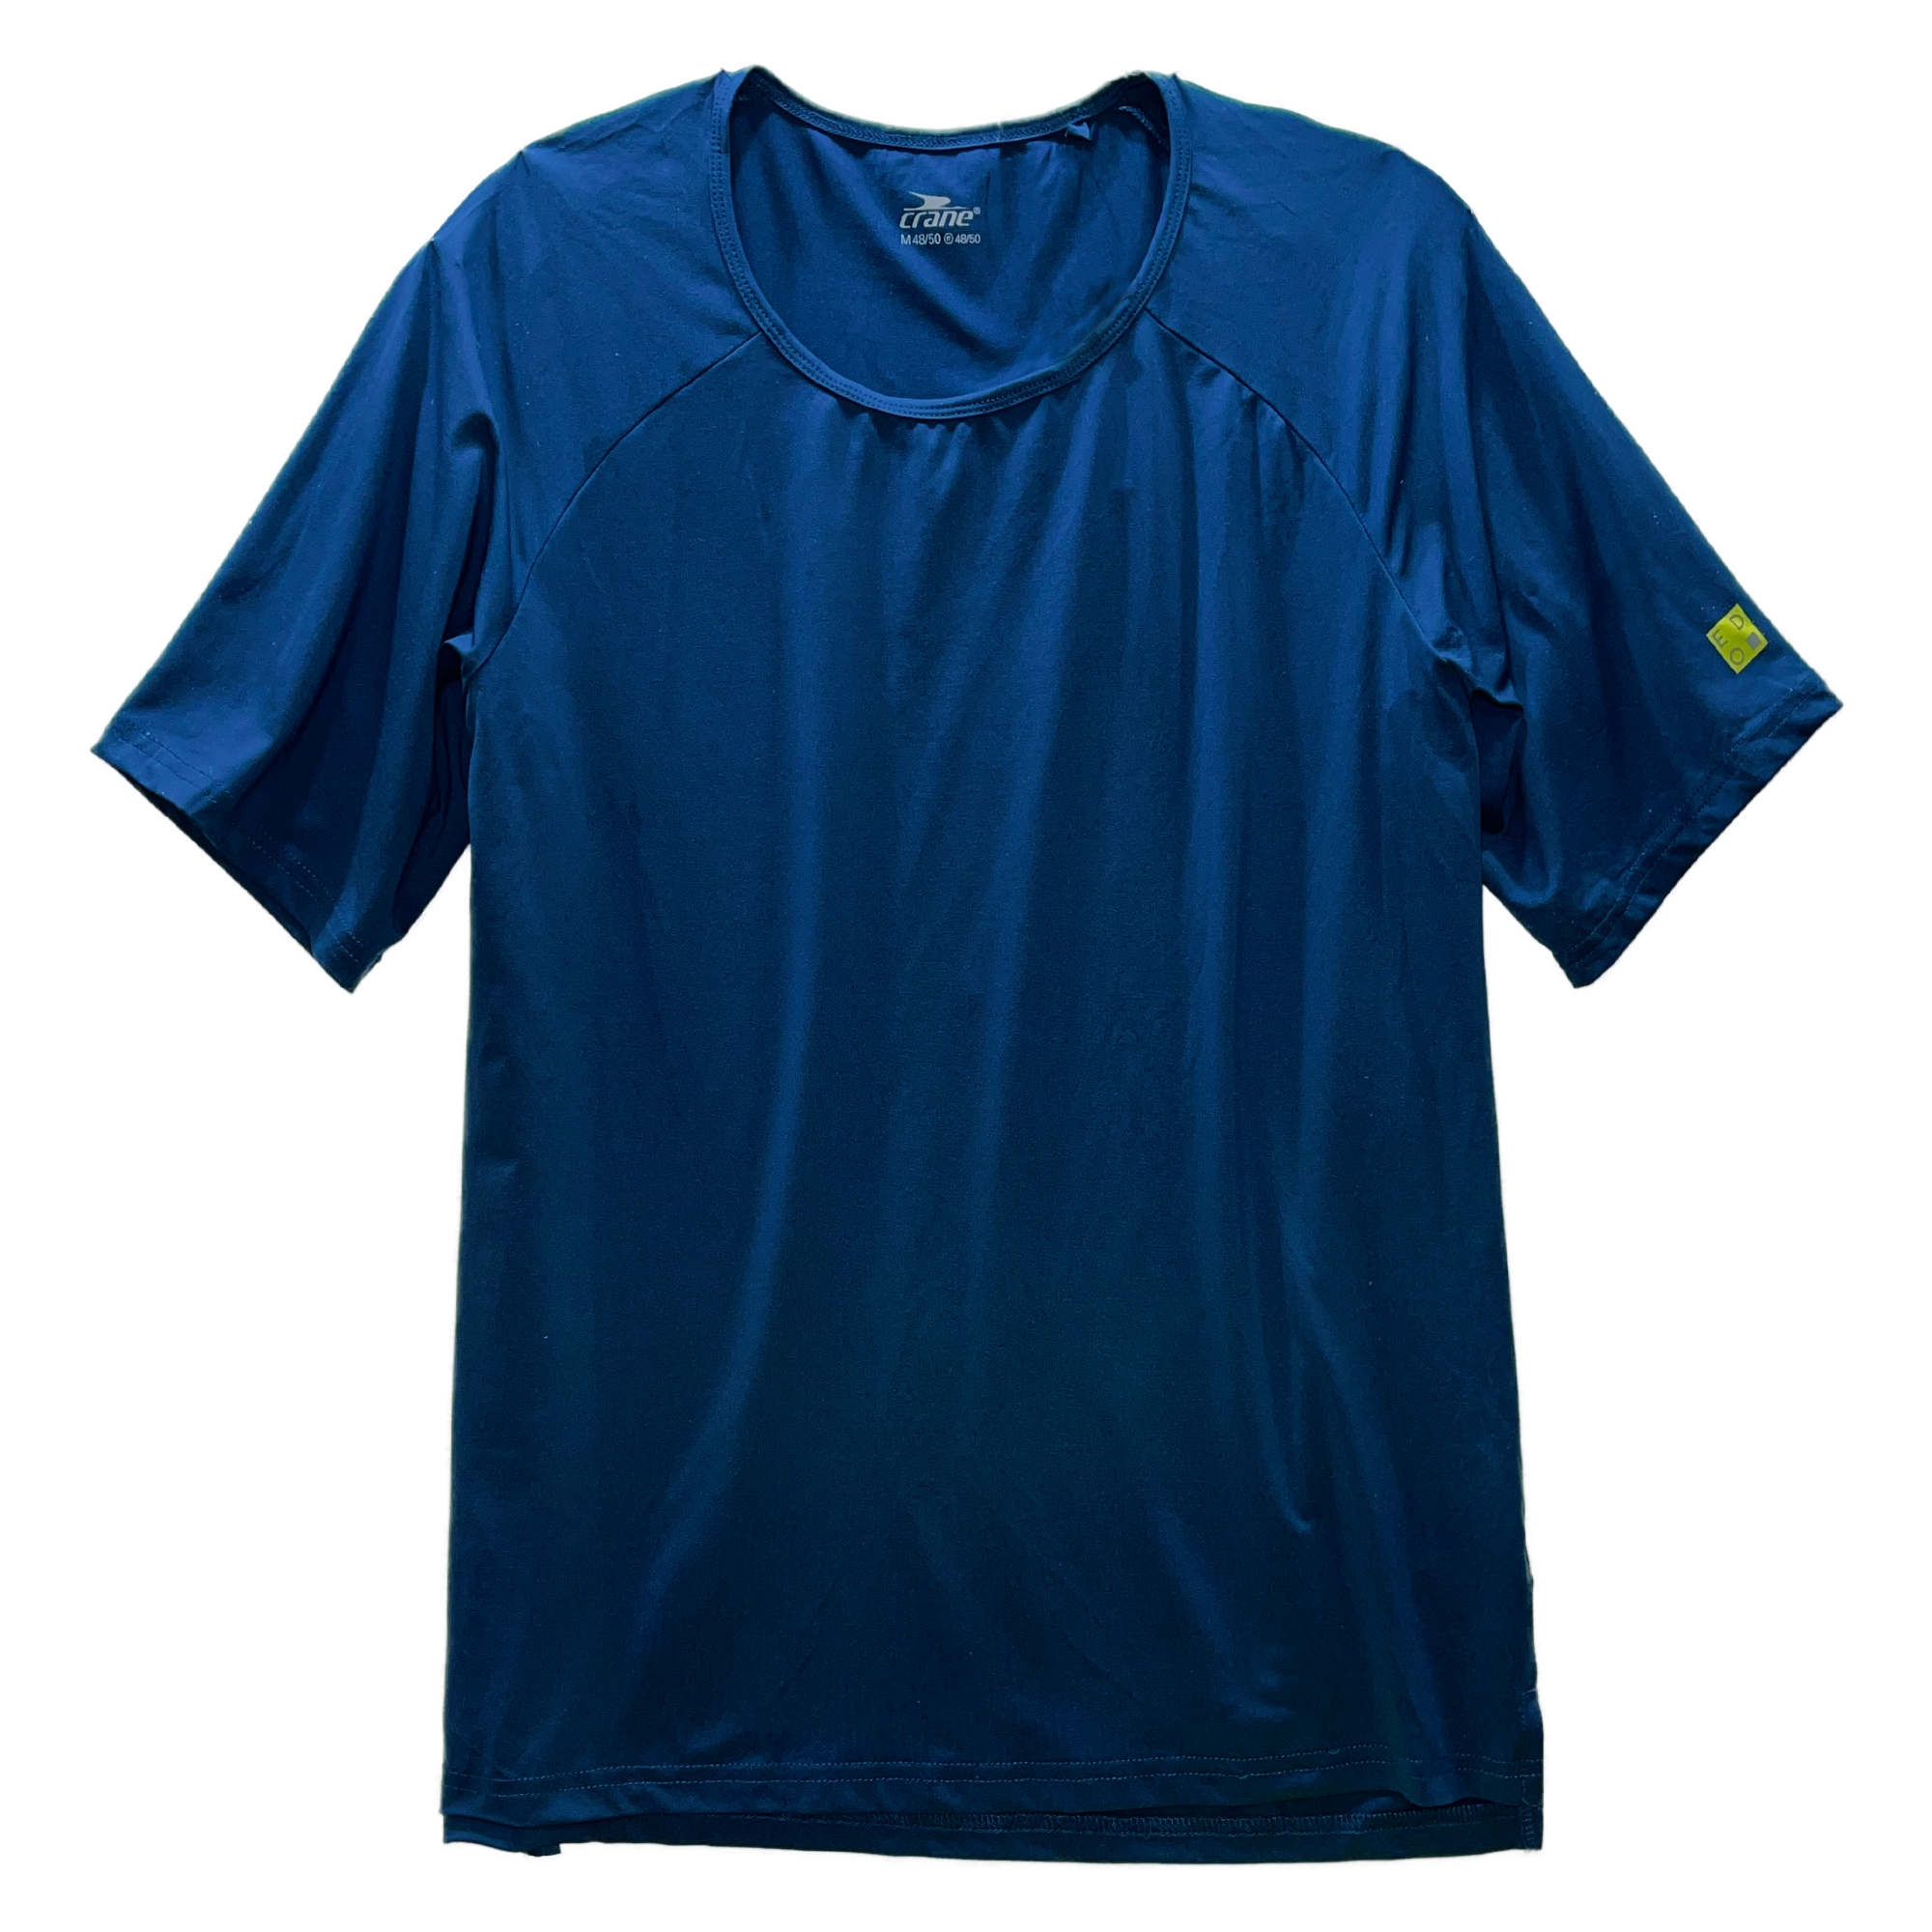 تی شرت ورزشی مردانه کرین مدل 540154 -  - 1